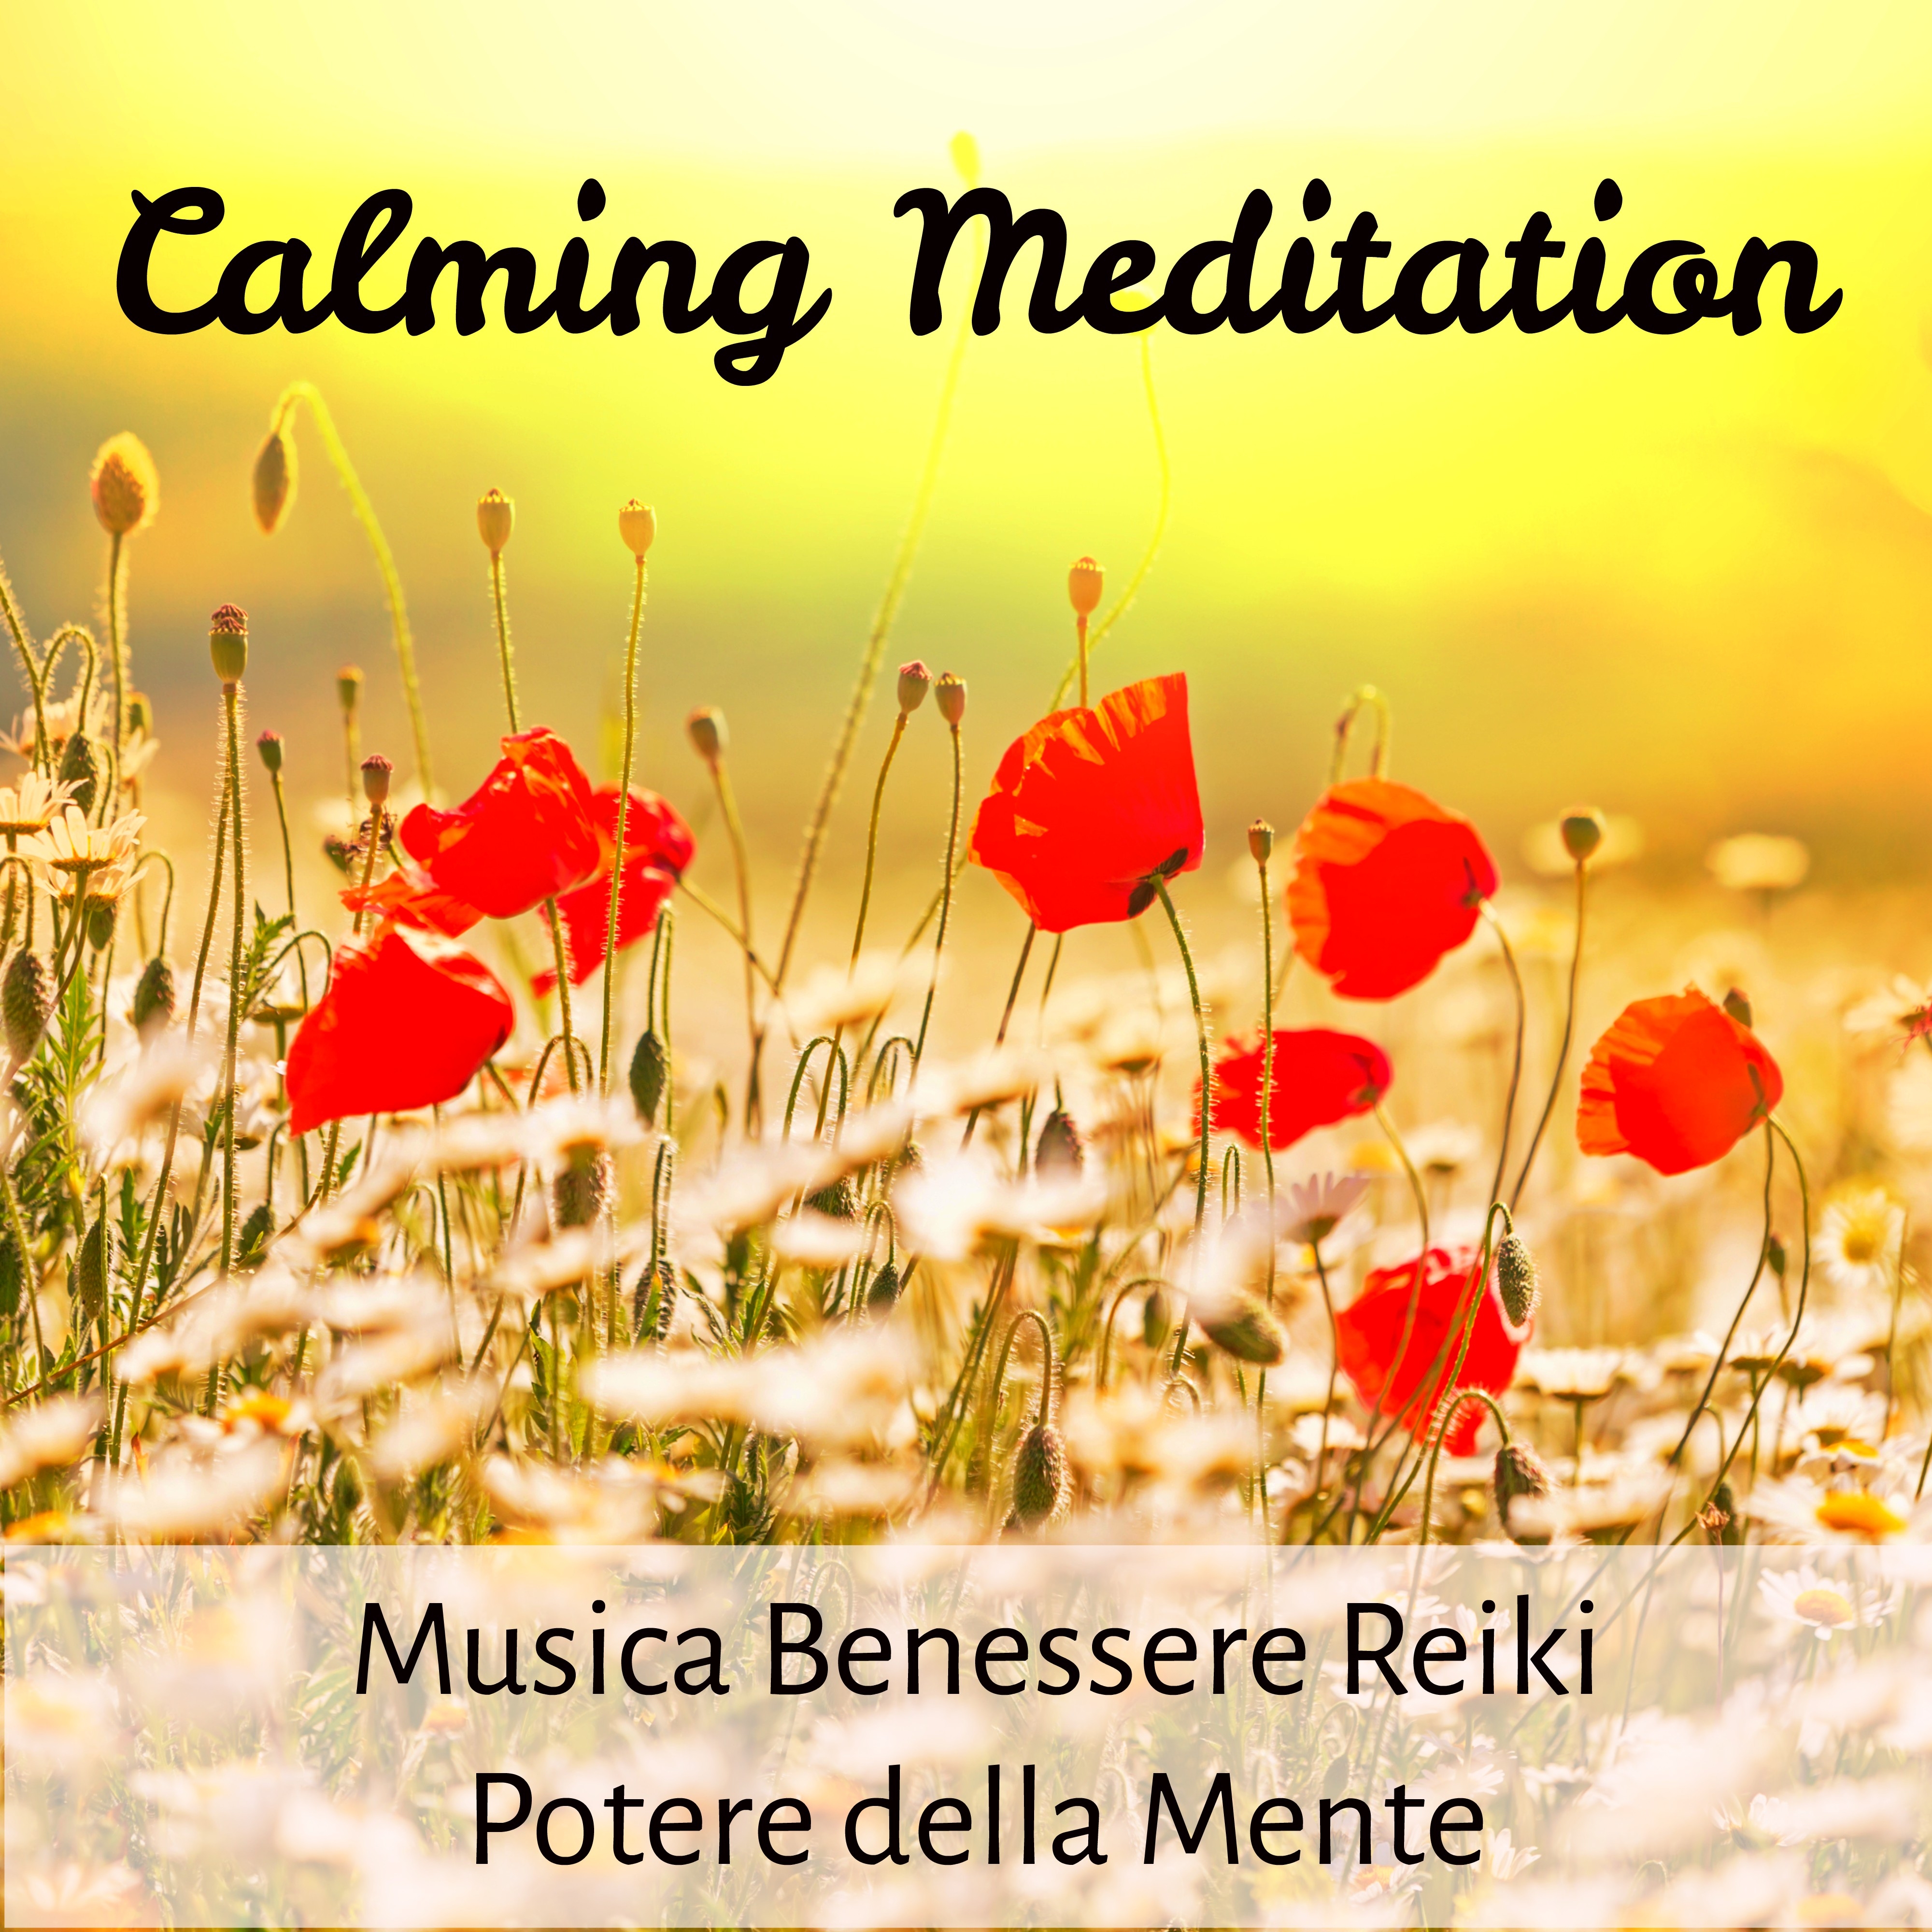 Calming Meditation - Musica Benessere Reiki Potere della Mente per Combattere l'Ansia con Suoni della Natura Strumentali